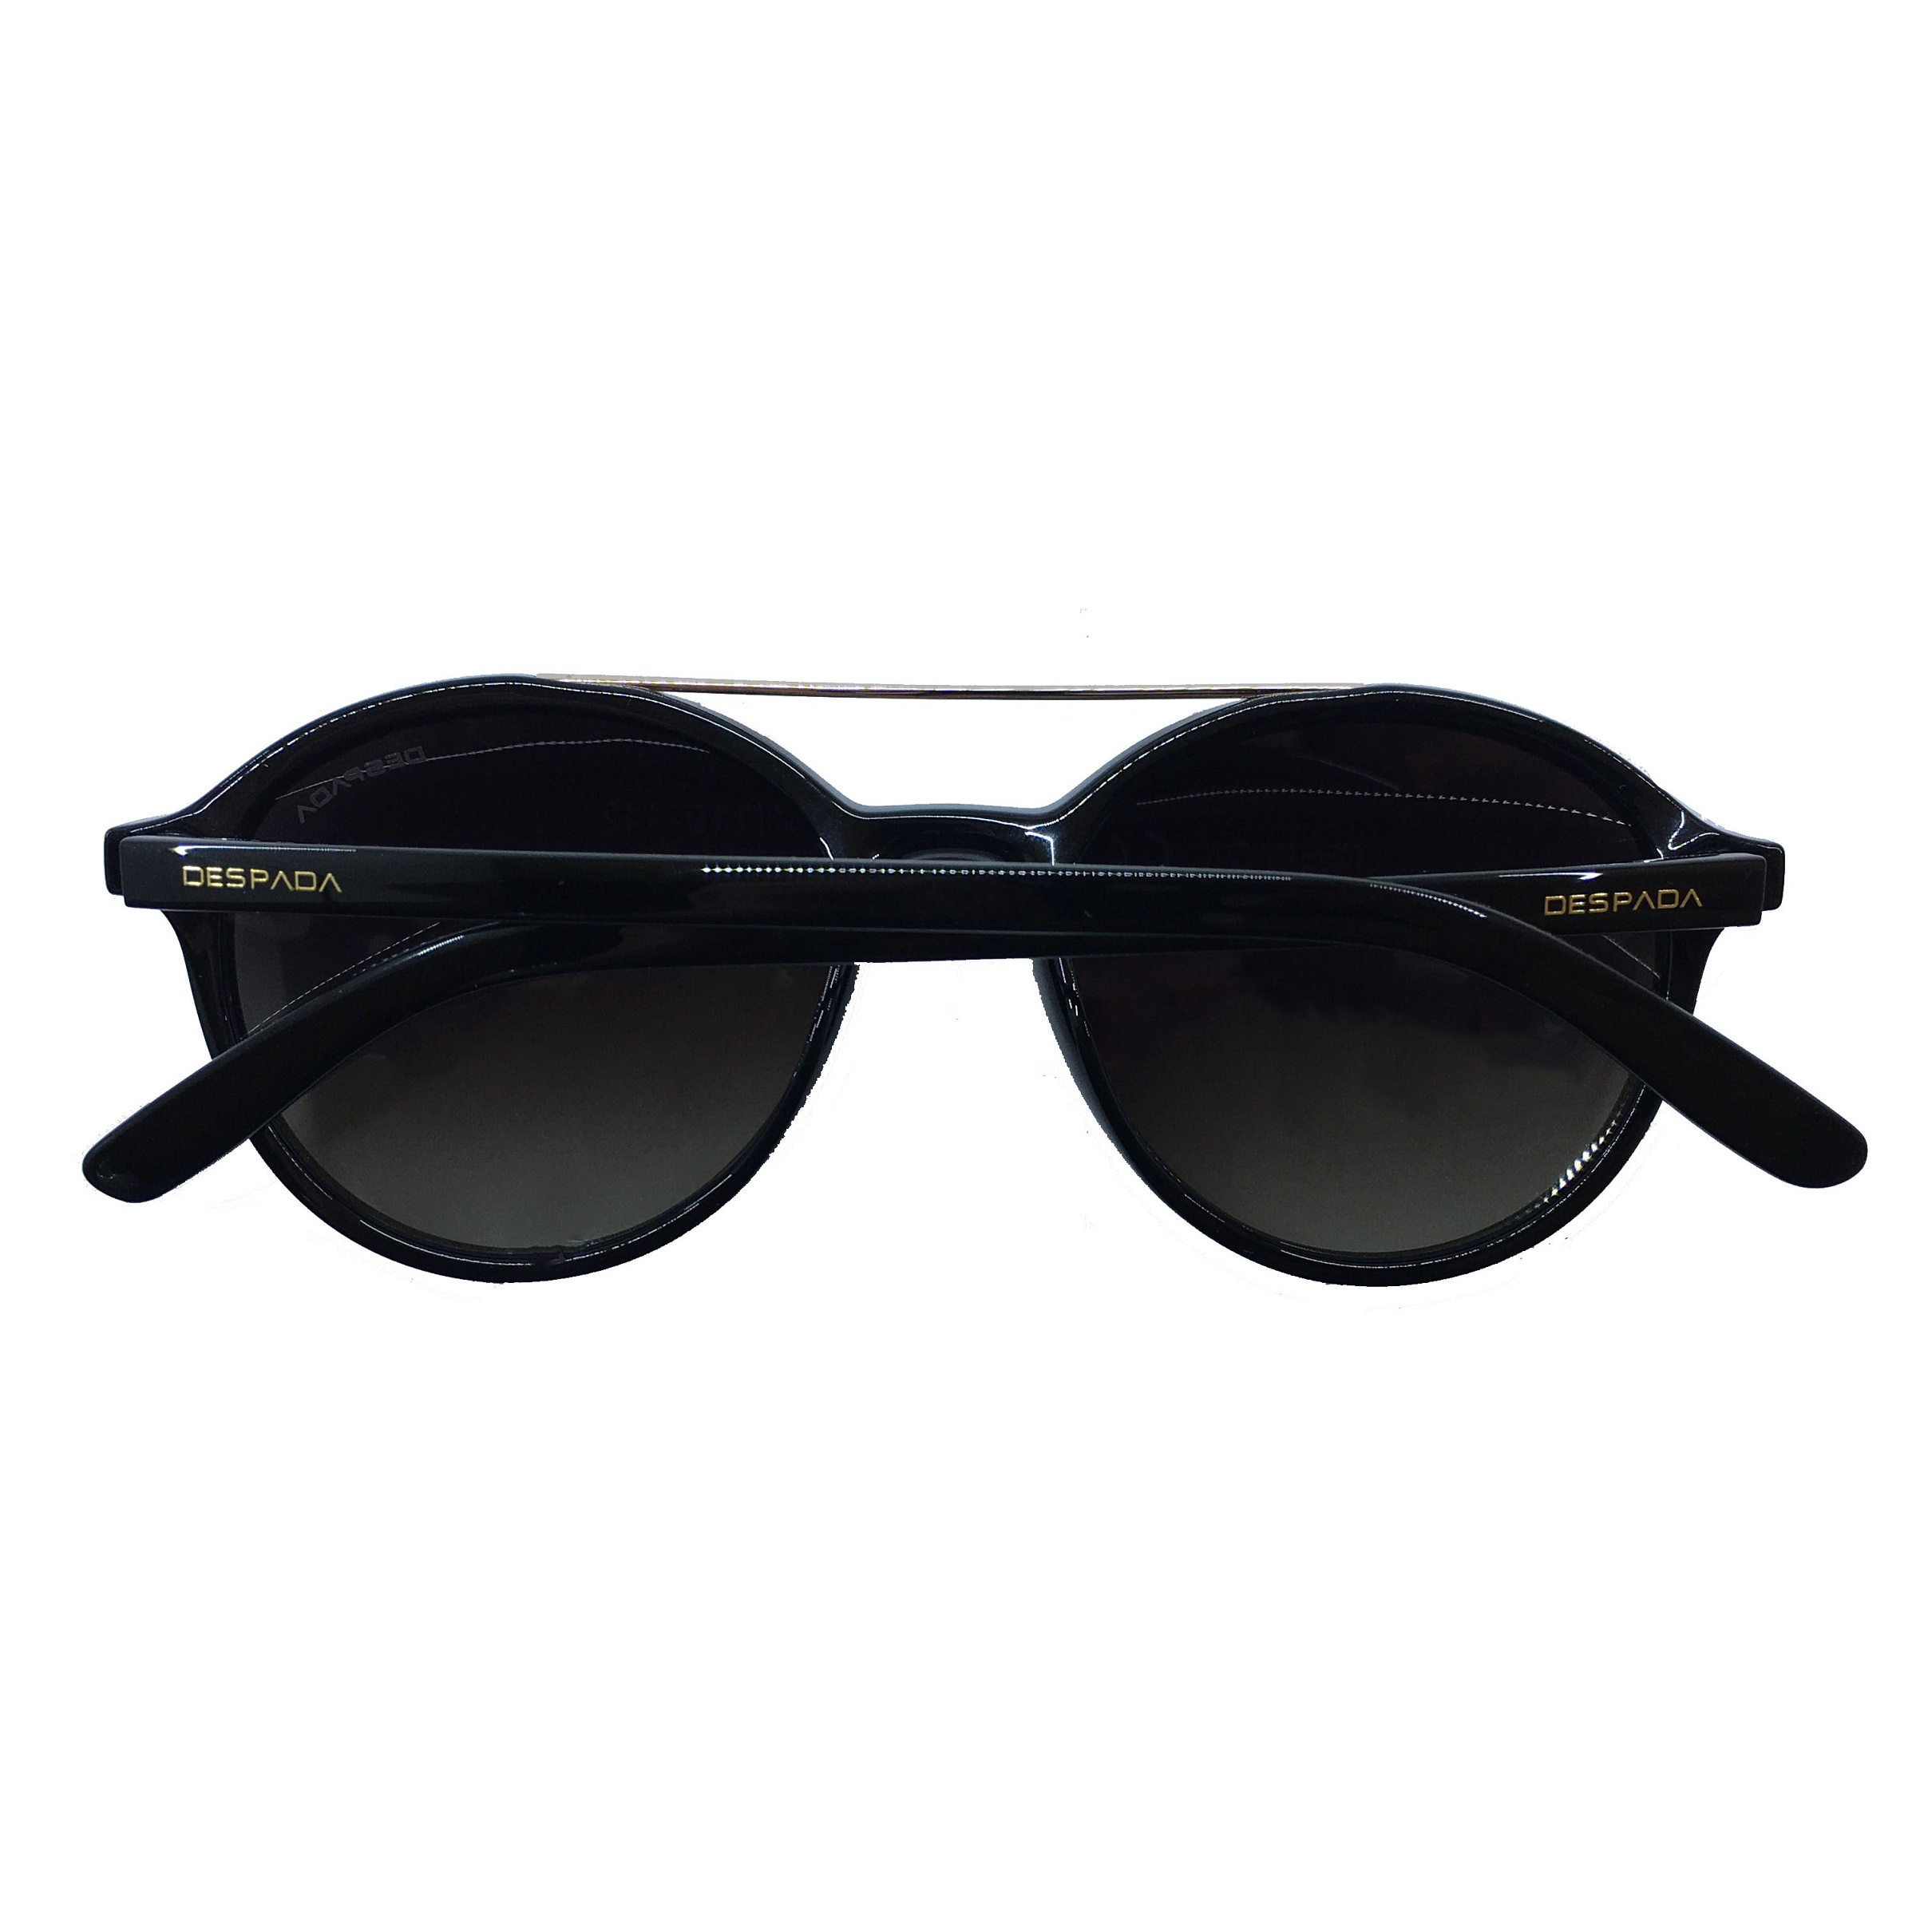 عینک آفتابی مردانه دسپادا مدل DS1569 C1 -  - 5